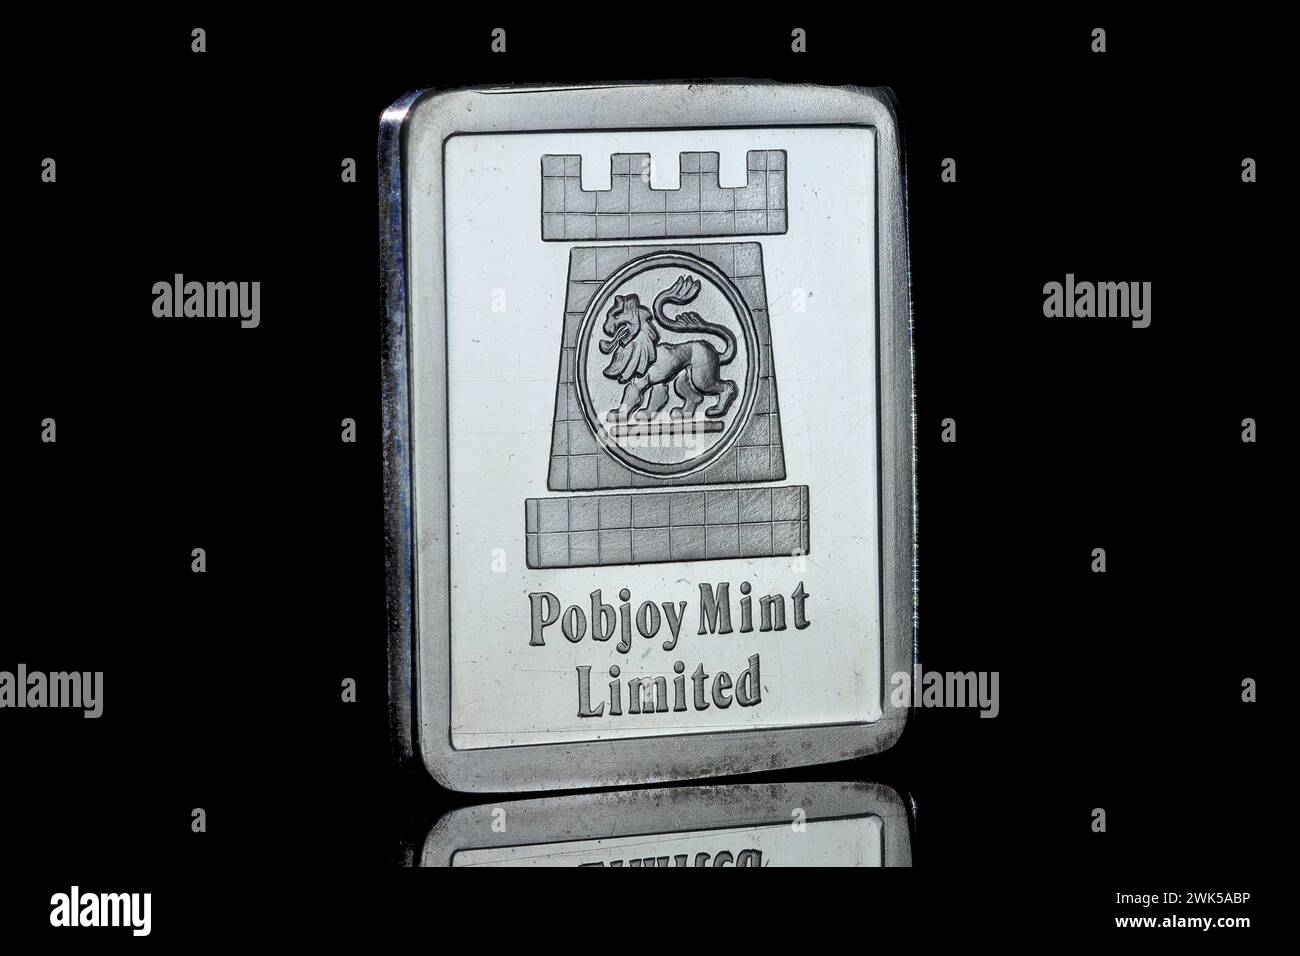 Un lingot argenté portant le logo de la marque Pobjoy Mint Limited. Le fabricant de pièces de monnaie a maintenant cessé de commercer après 58 ans. Banque D'Images